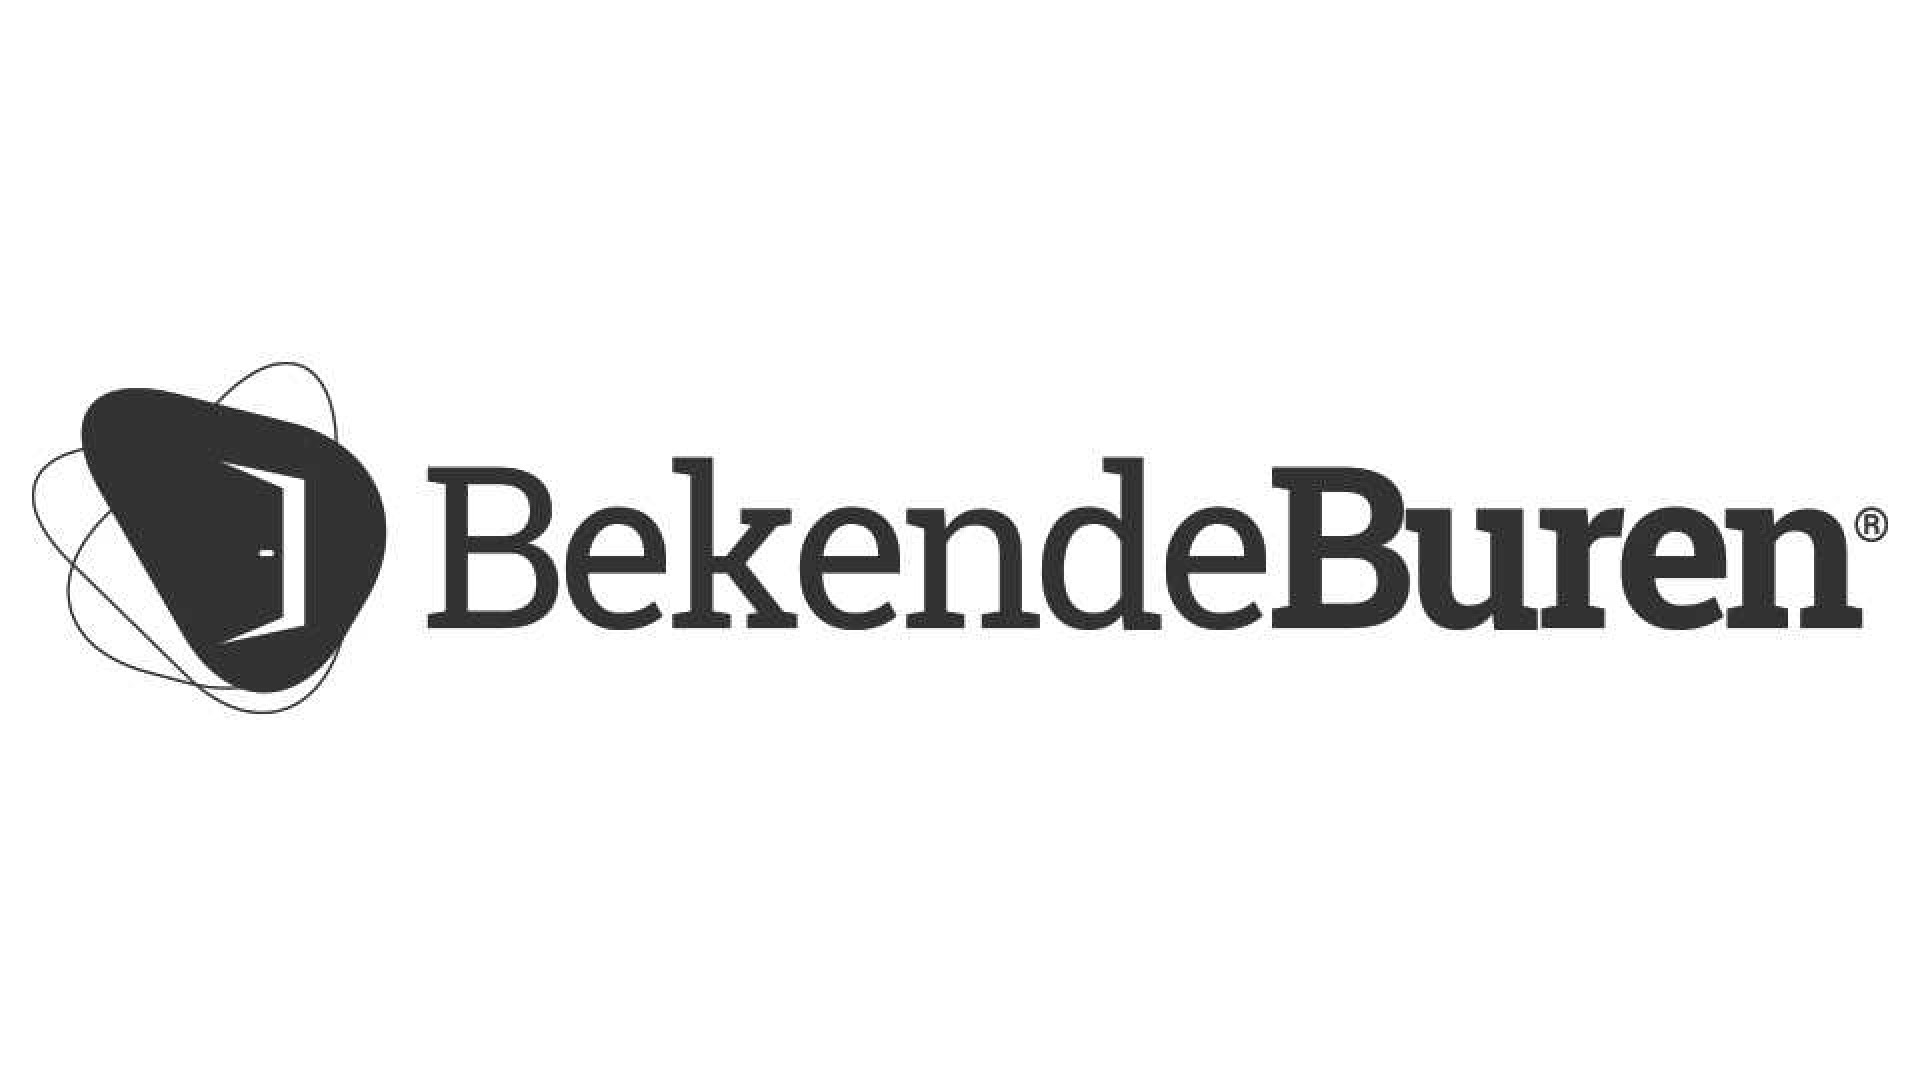 Nieuw: BB Exclusief, het beste van bekendeburen.nl alleen voor jou